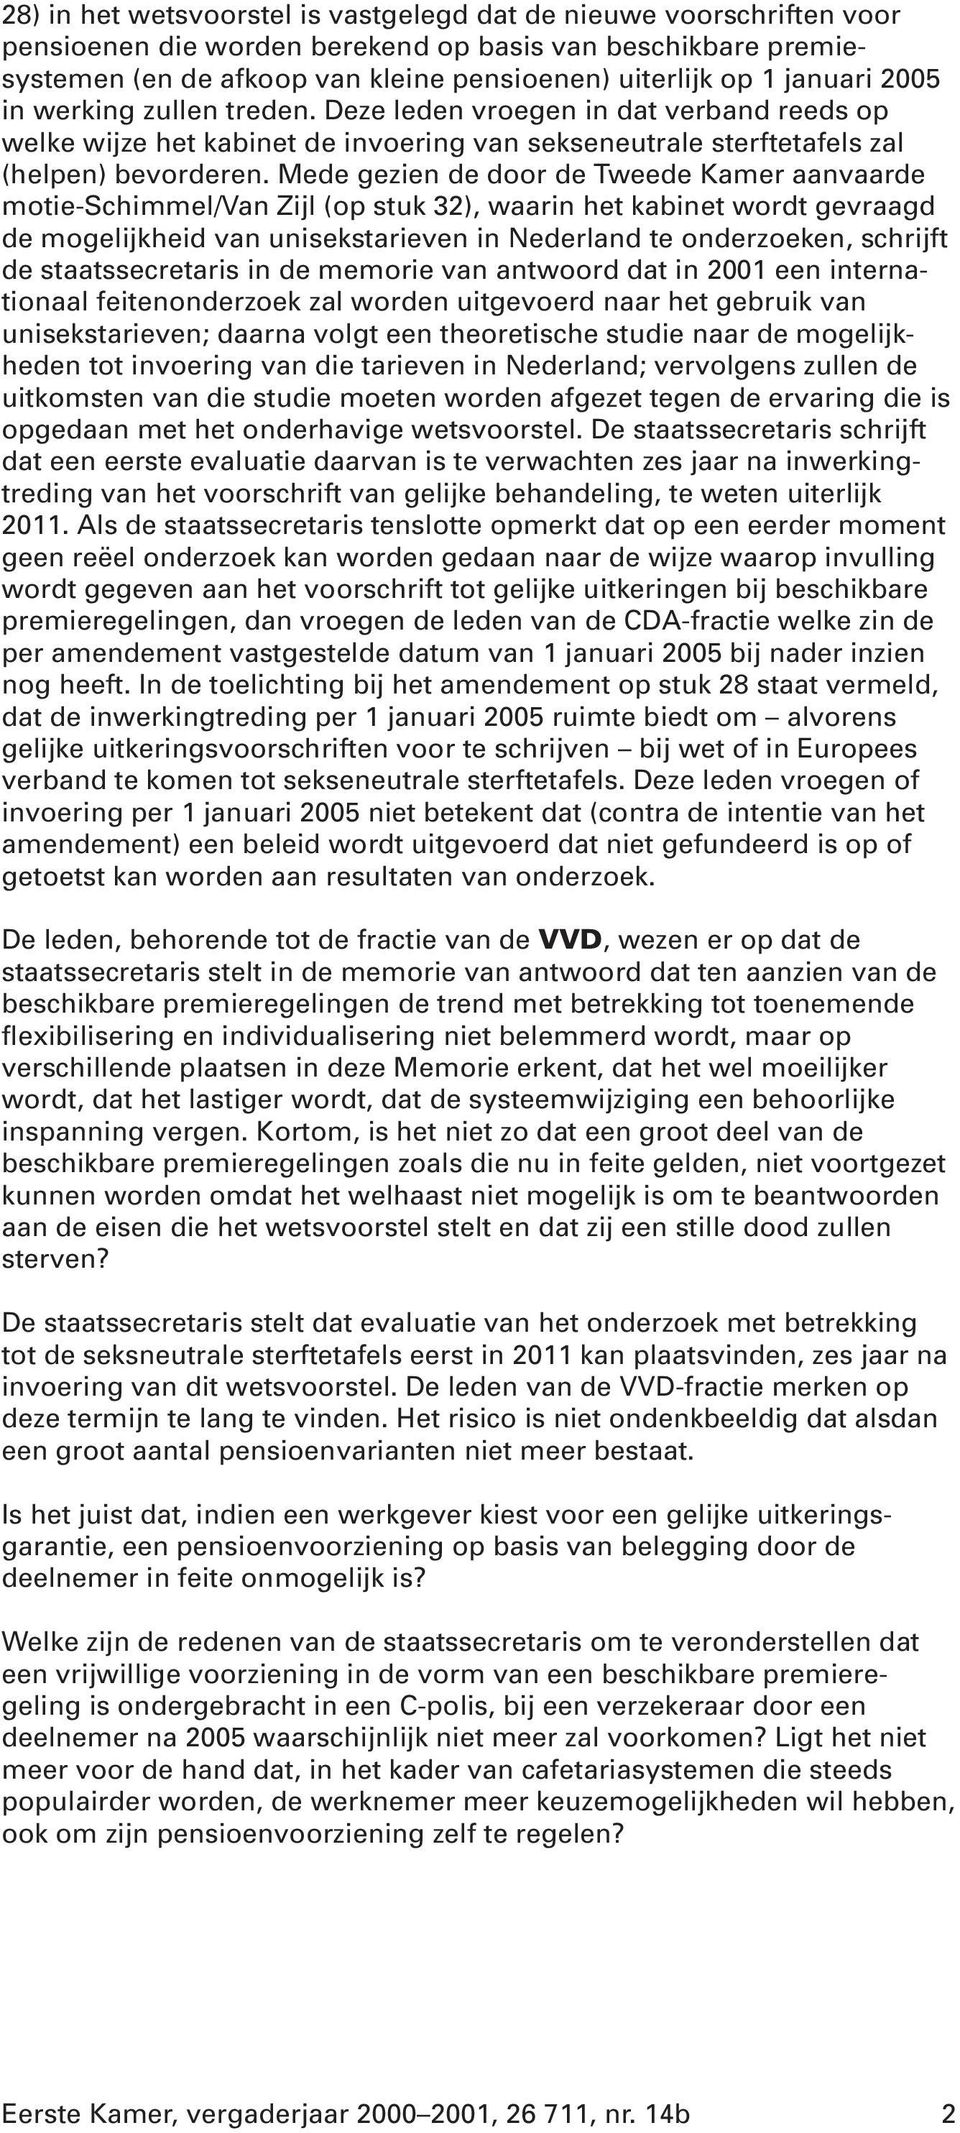 Mede gezien de door de Tweede Kamer aanvaarde motie-schimmel/van Zijl (op stuk 32), waarin het kabinet wordt gevraagd de mogelijkheid van unisekstarieven in Nederland te onderzoeken, schrijft de